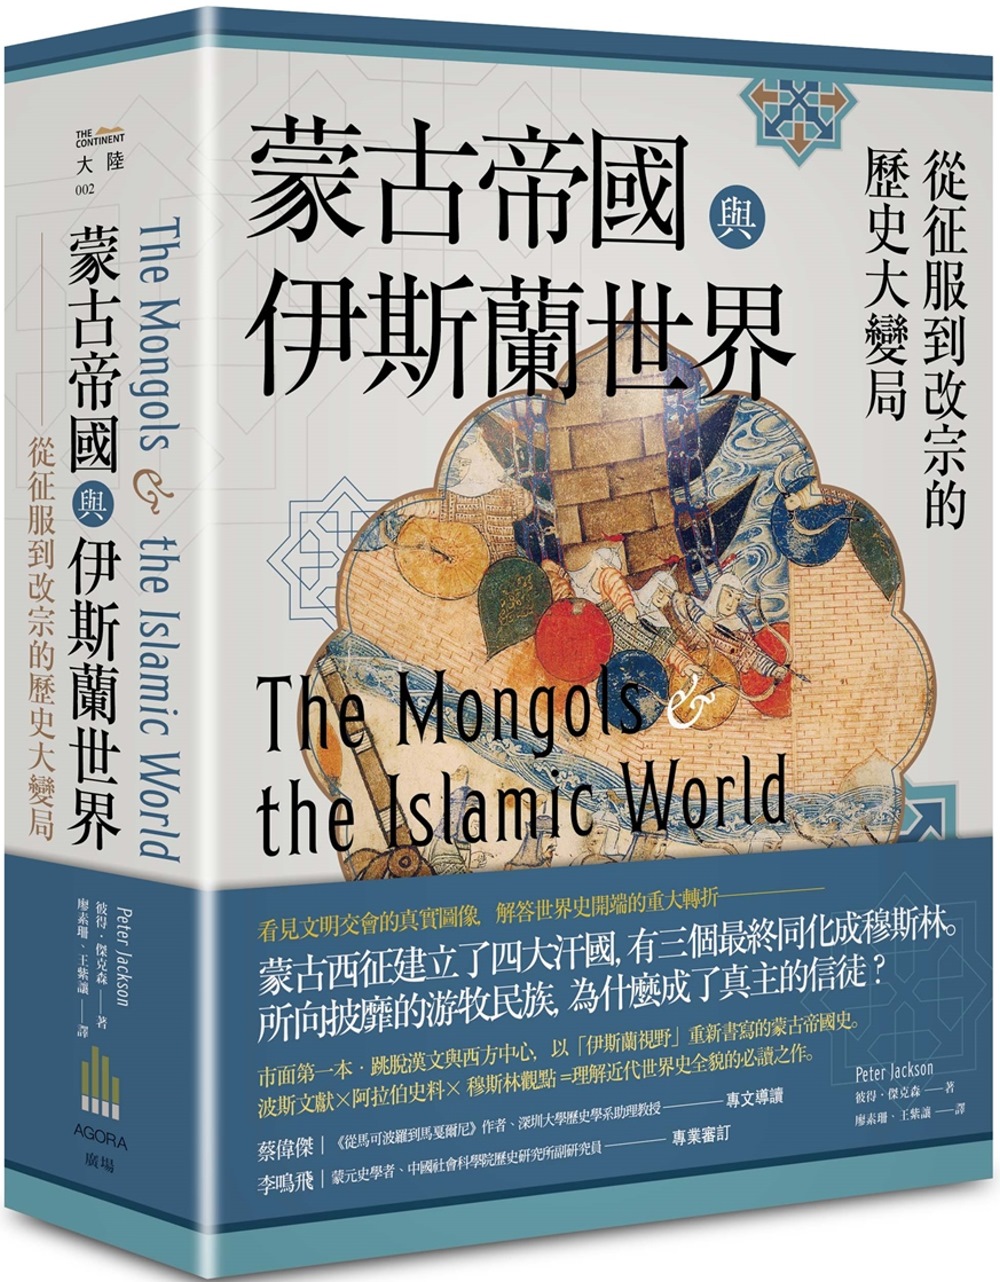 蒙古帝國與伊斯蘭世界：從征服到改宗的歷史大變局